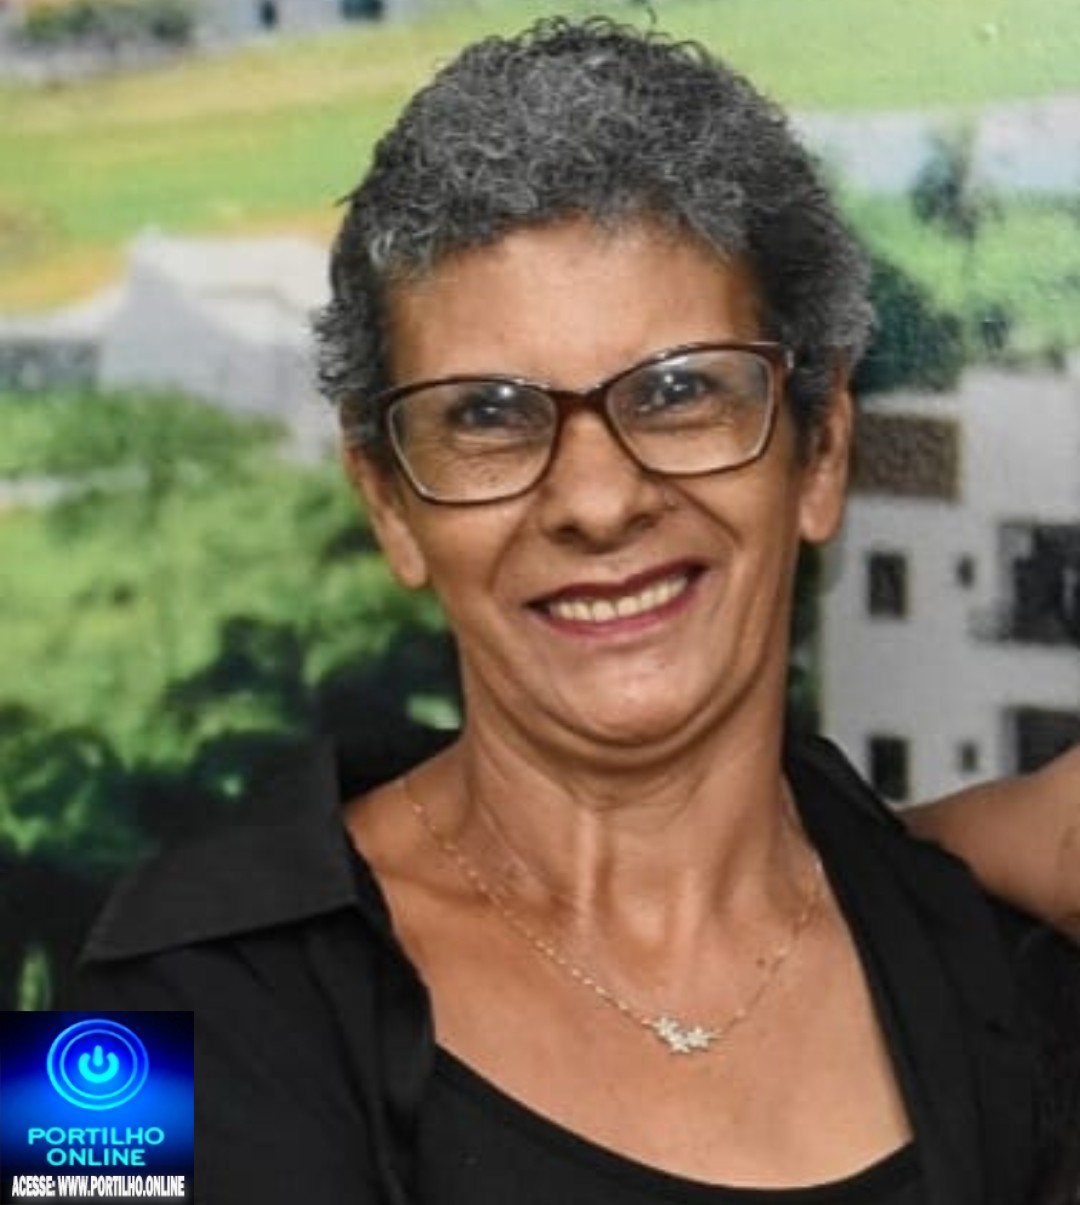 👉 LUTO!!! ⚰🕯😔😪⚰🕯😪👉😱😭😪⚰🕯😪 NOTA DE FALECIMENTO … Faleceu ontem em Patrocínio Maria da Glória Marques Silva (Glorinha) com 57 anos.… A FUNERÁRIA SÃO PEDRO E VELÓRIO PRÍNCIPE DA PAZ INFORMA…